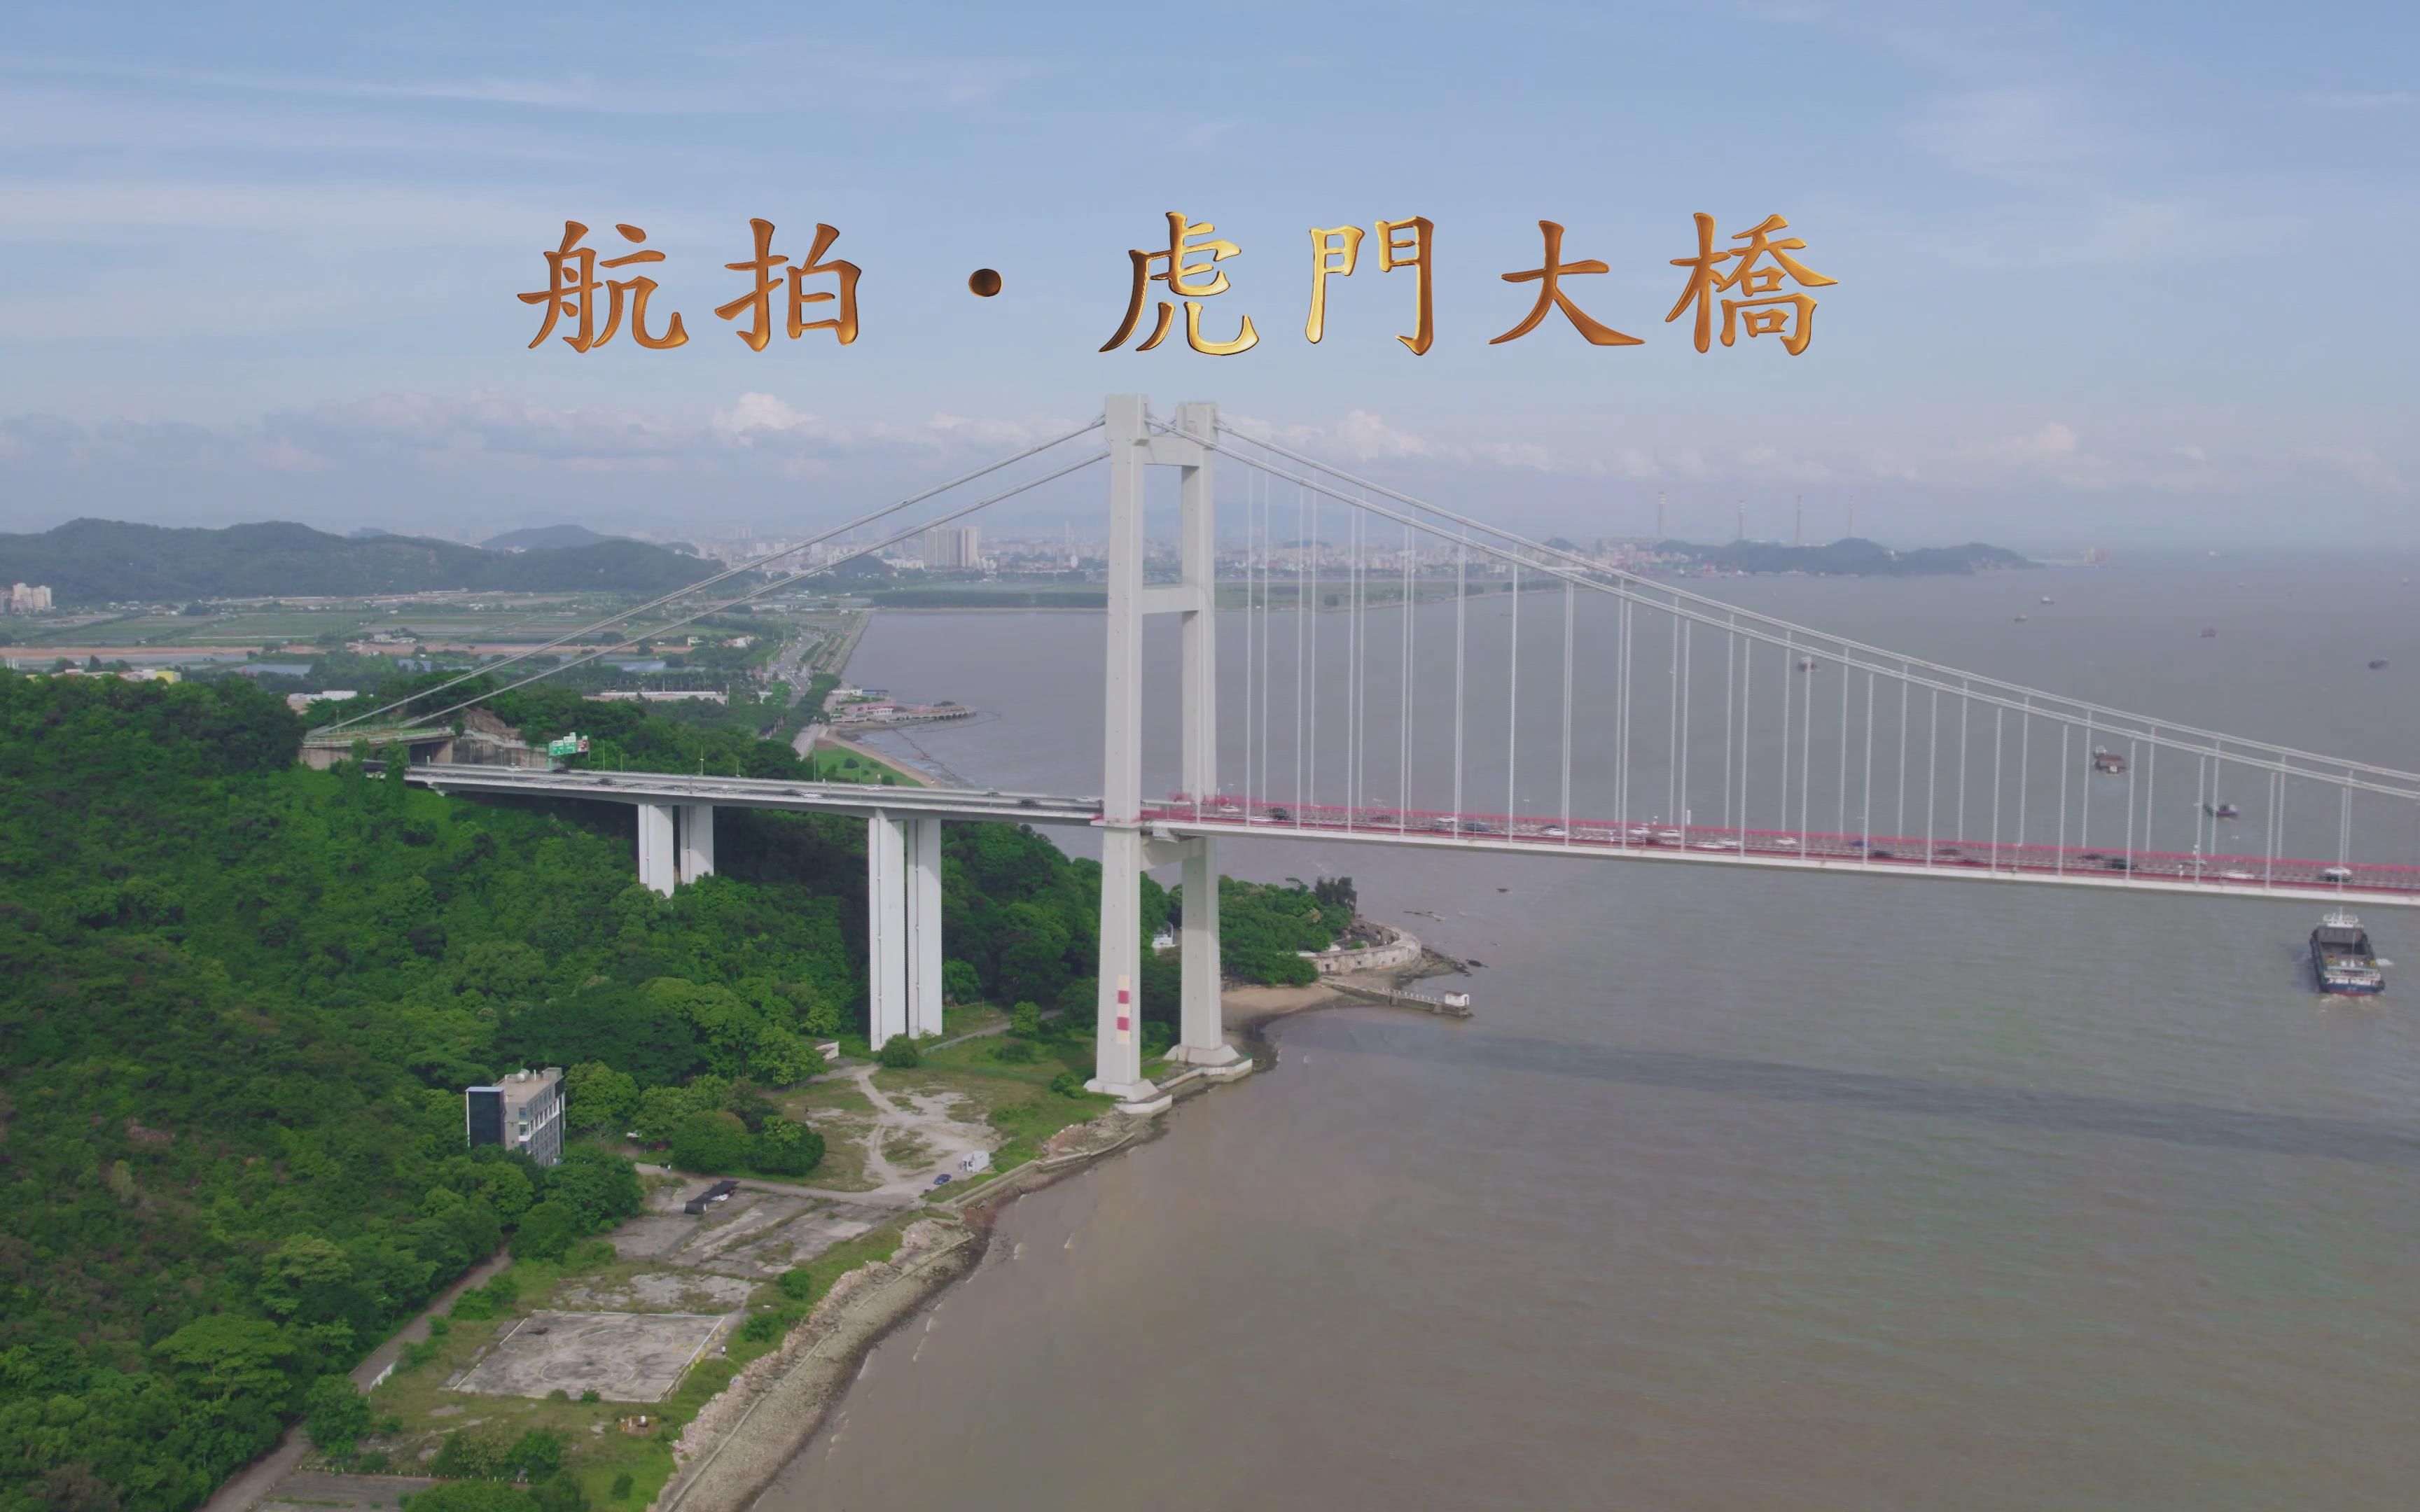 虎门大桥图片 全景图片